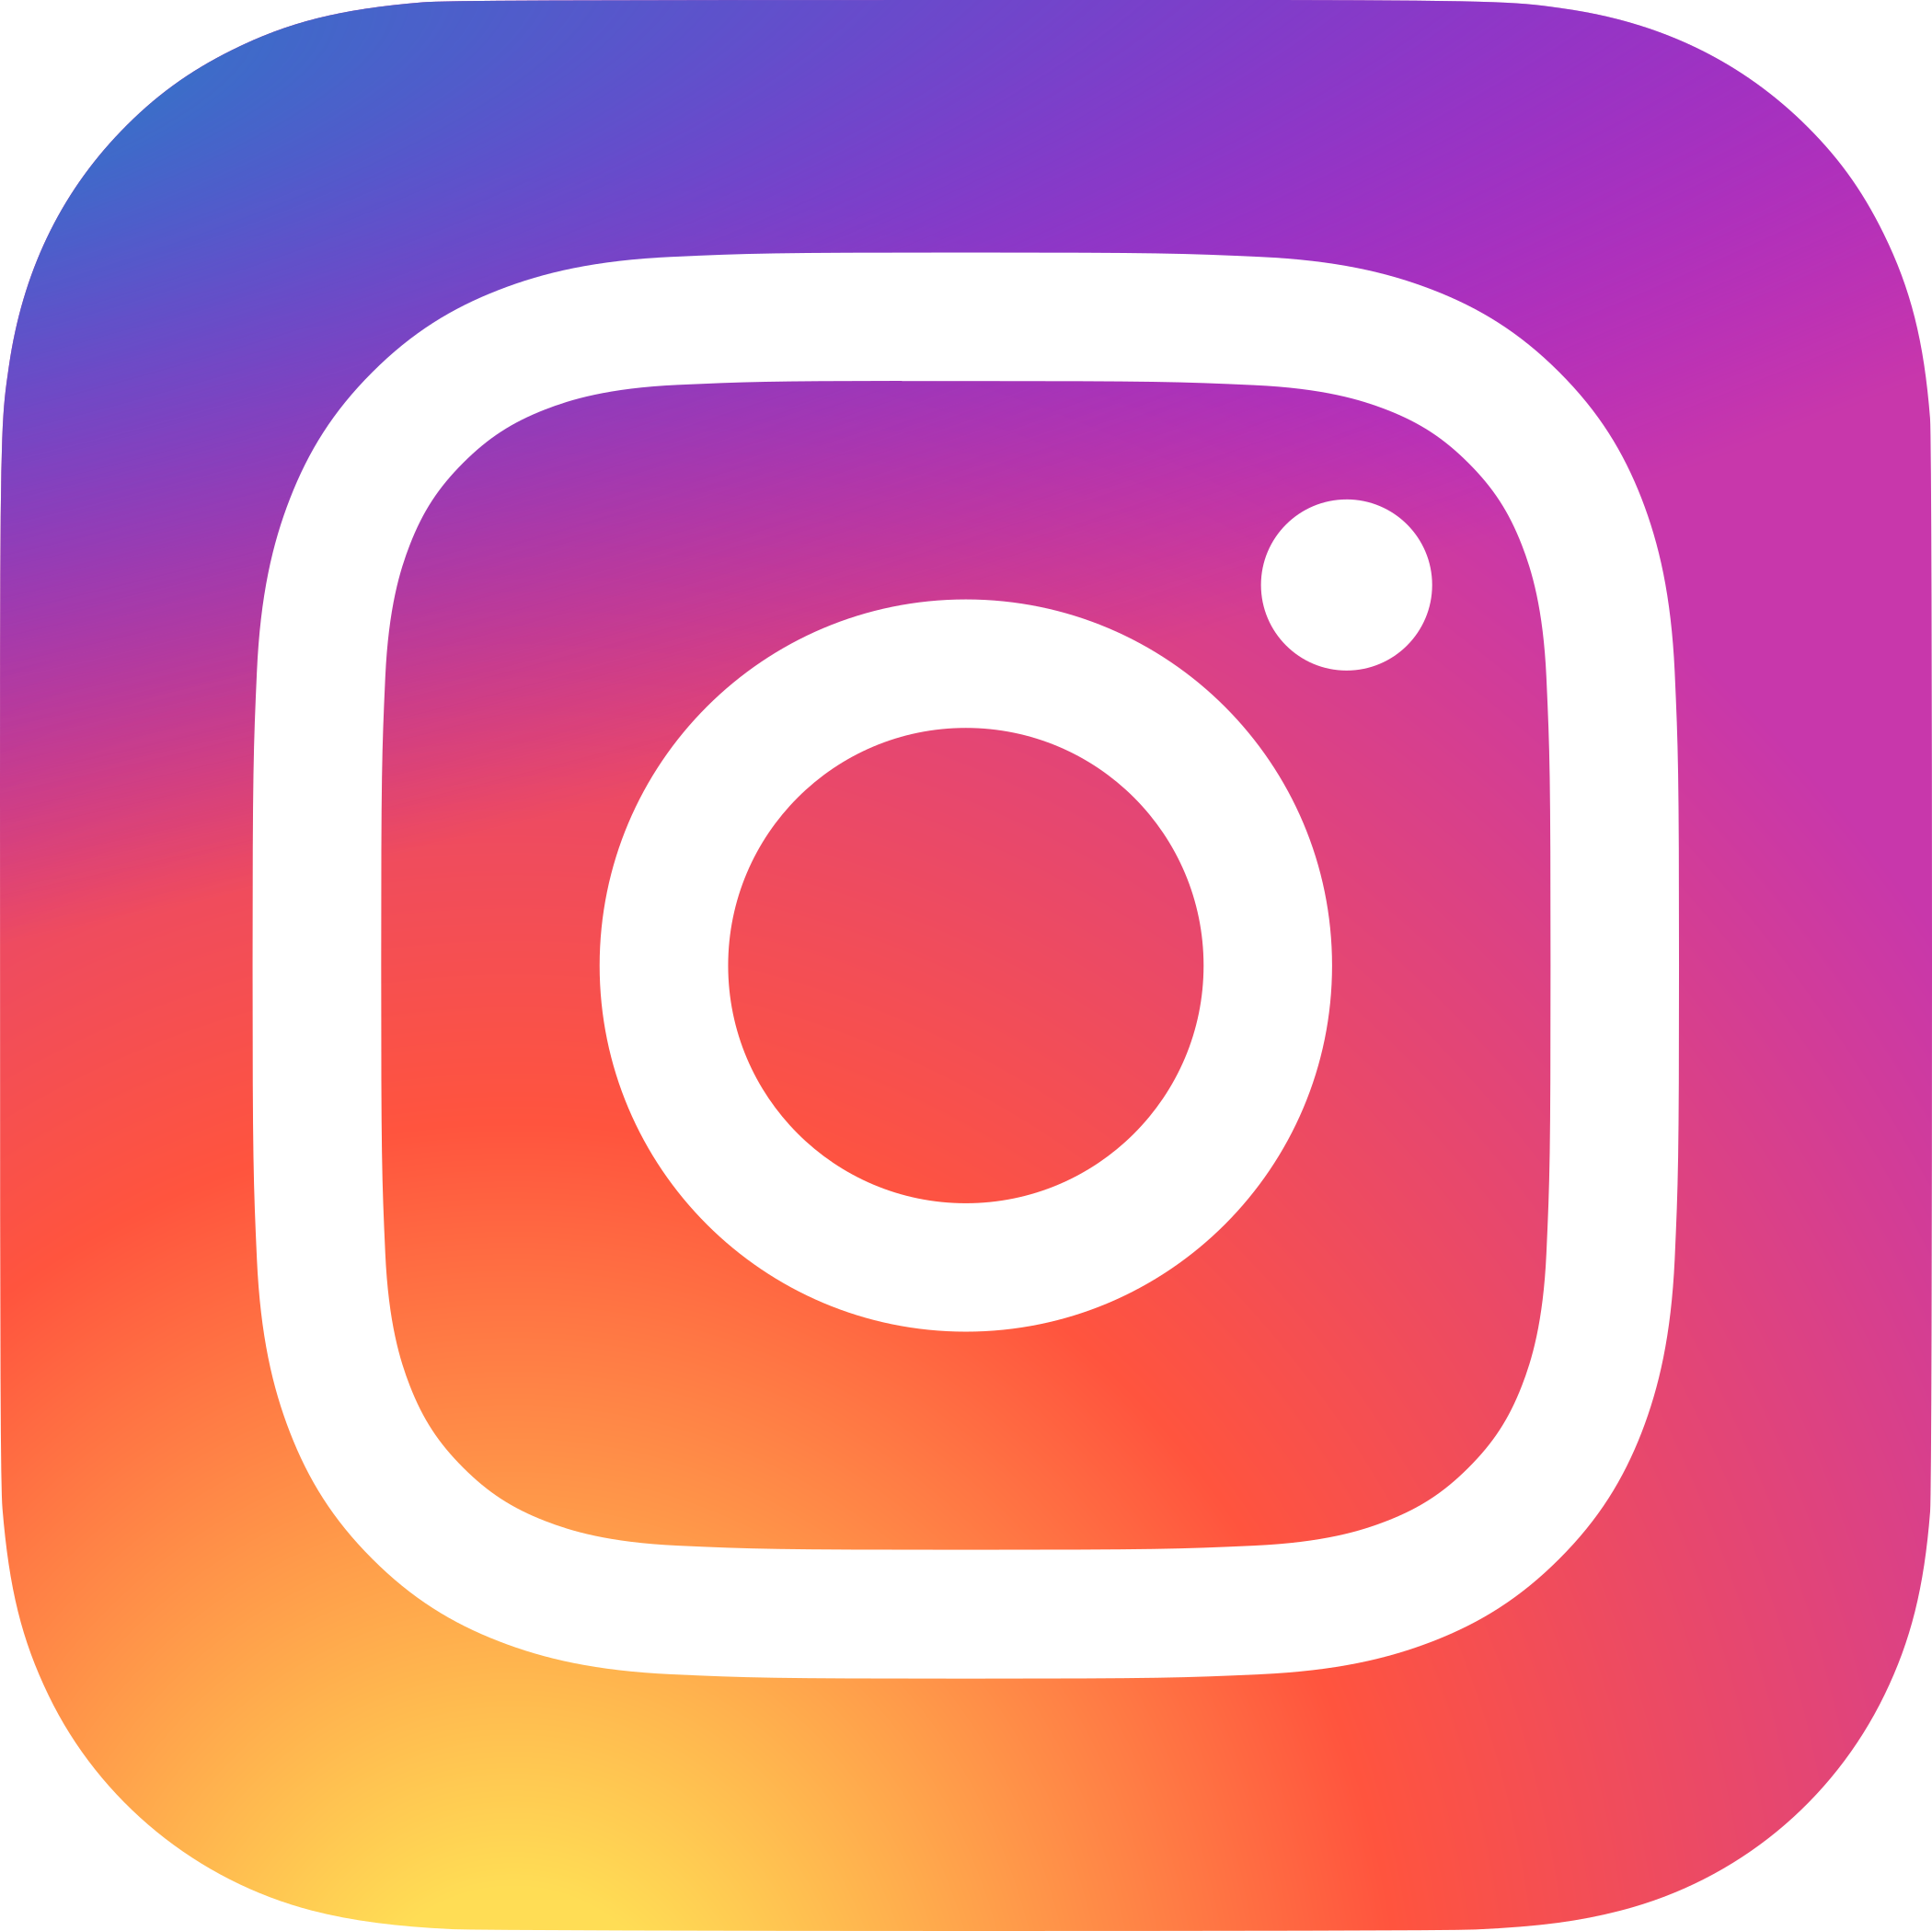 instagram logo 3